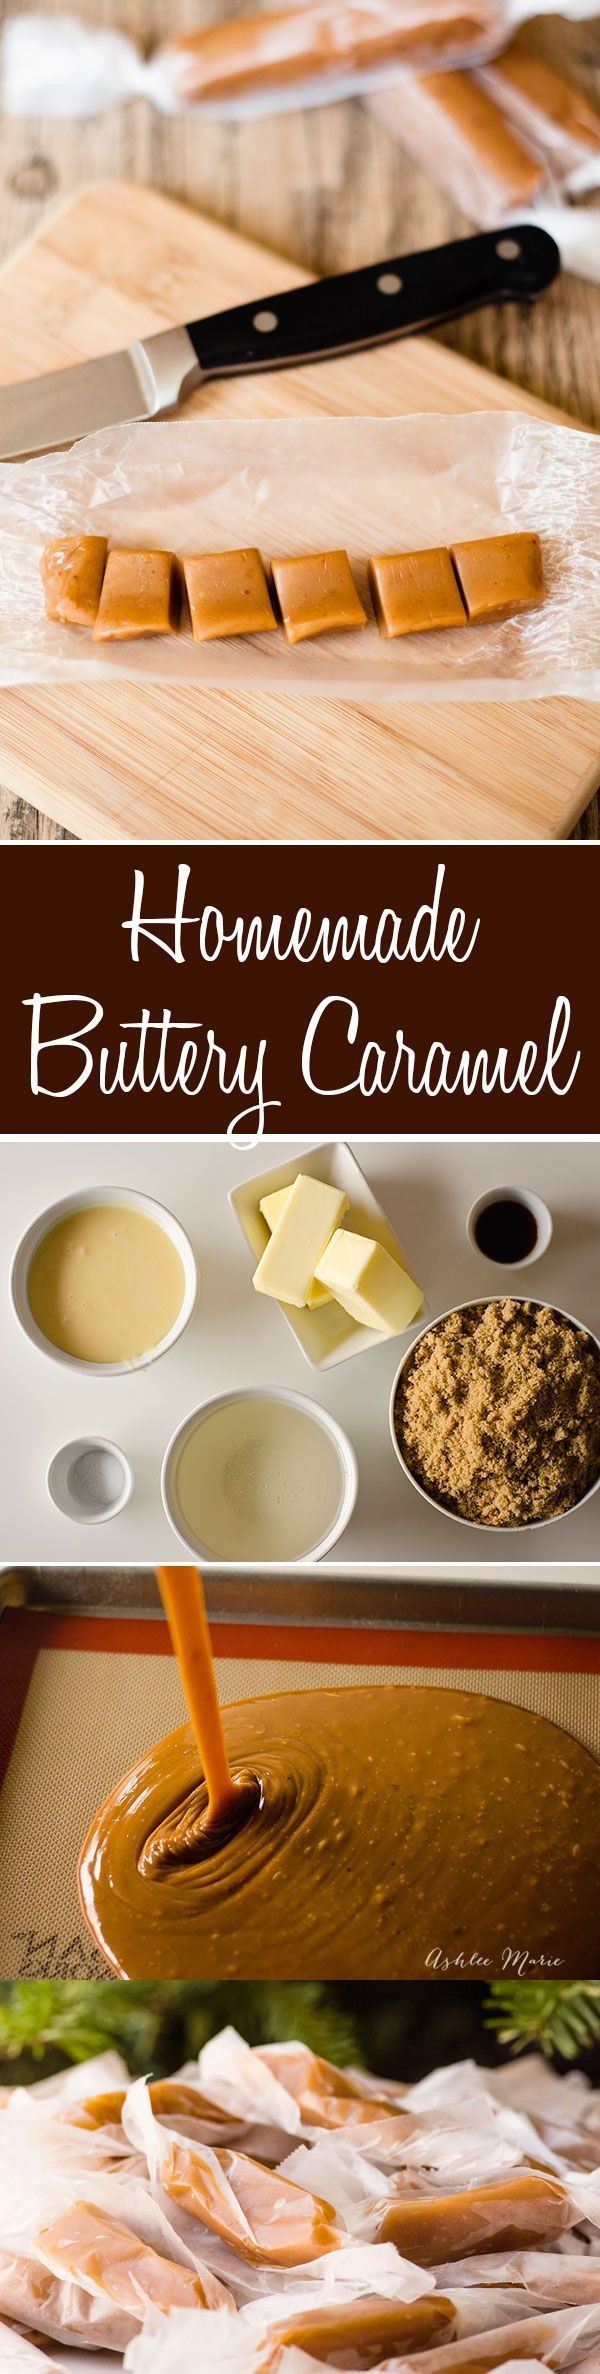 Homemade buttery caramels